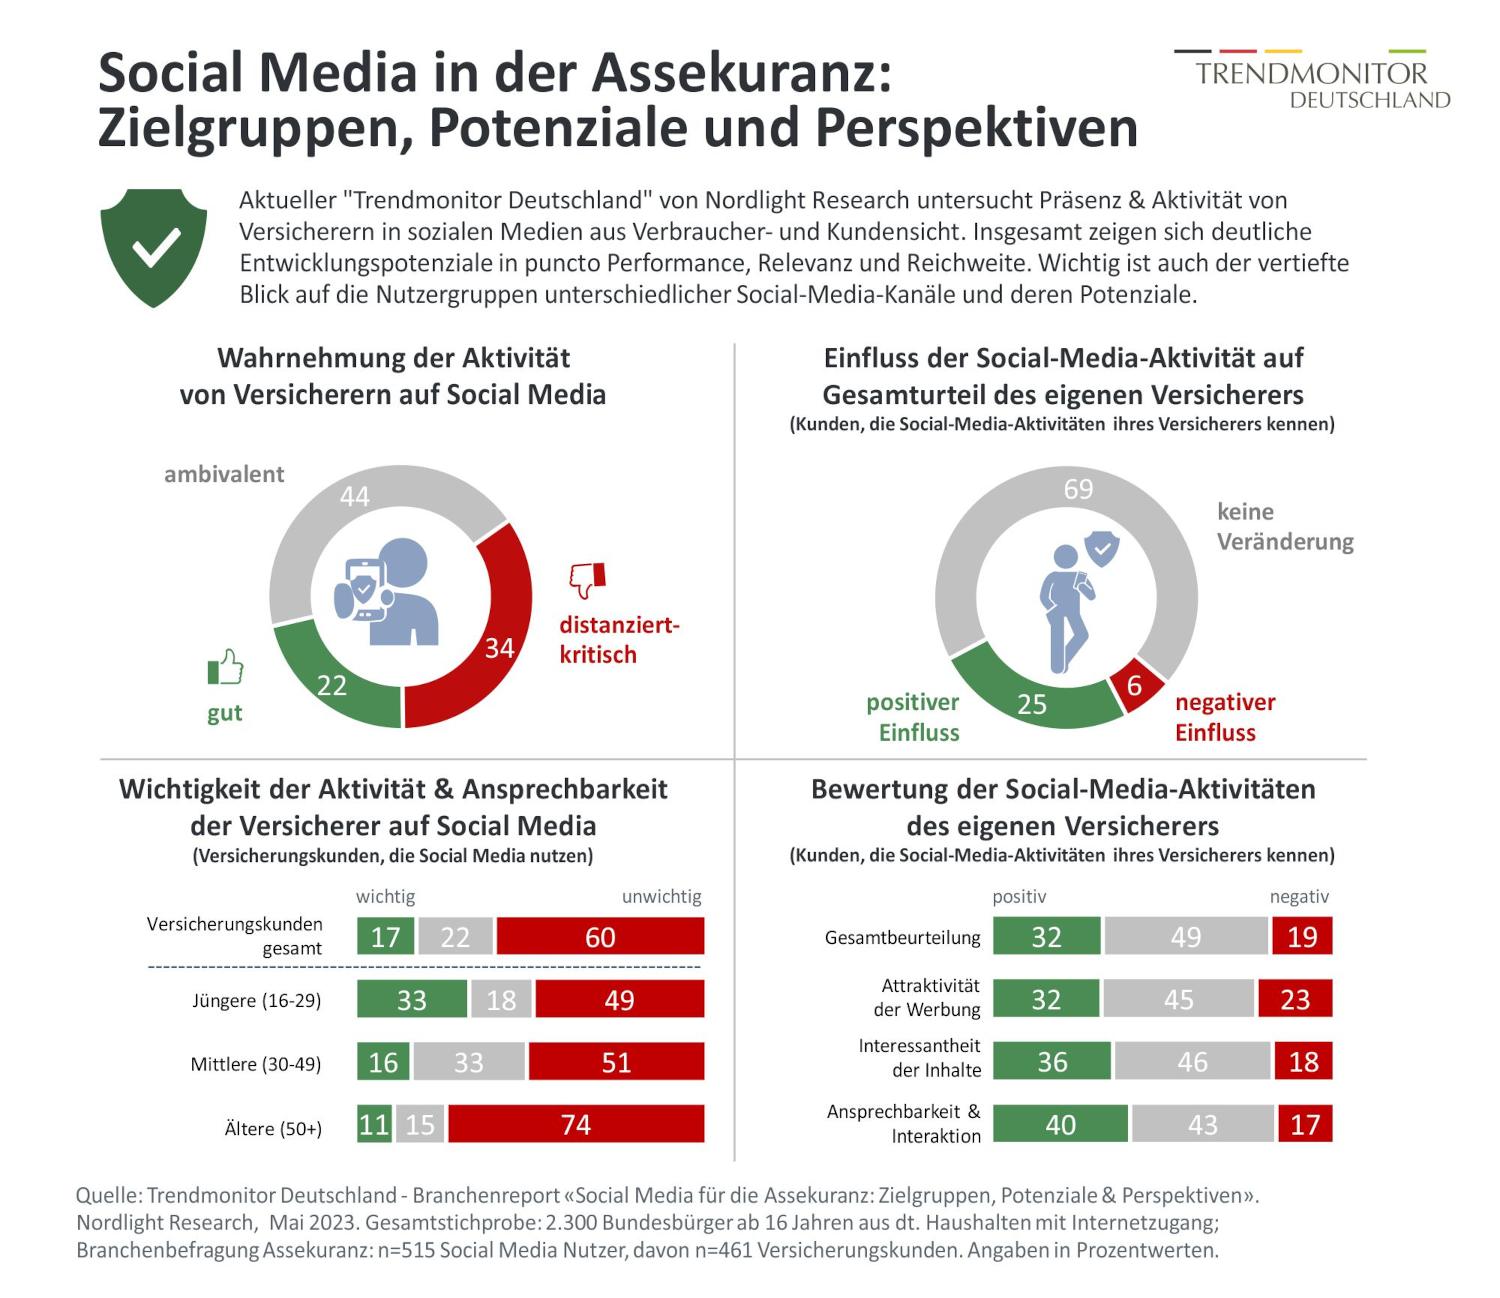 Die Rolle von Versicherern in den sozialen Medien (Quelle: Trendmonitor Deutschland)